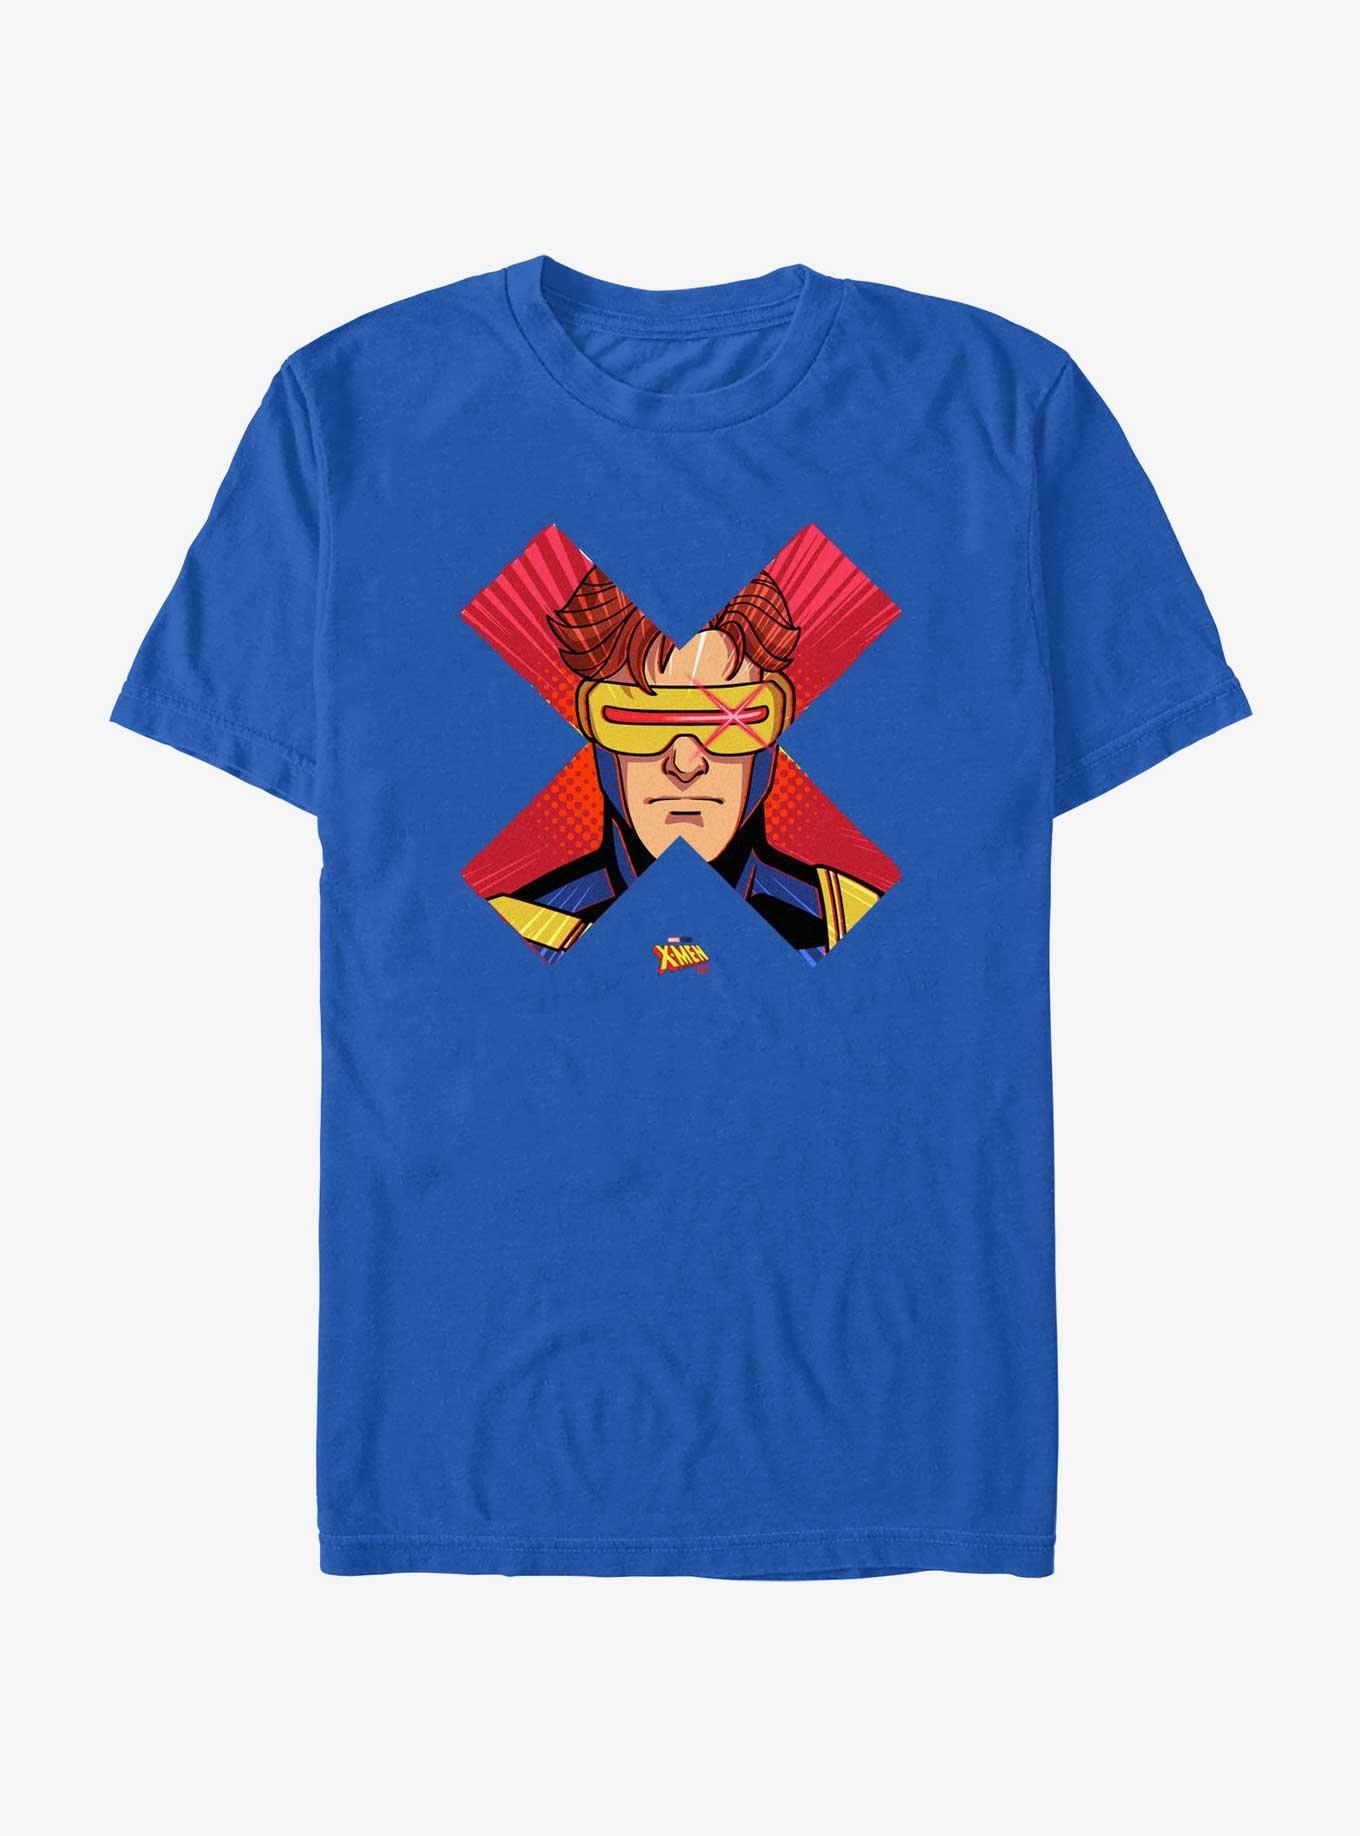 Marvel X-Men '97 Cyclops Face T-Shirt, ROYAL, hi-res